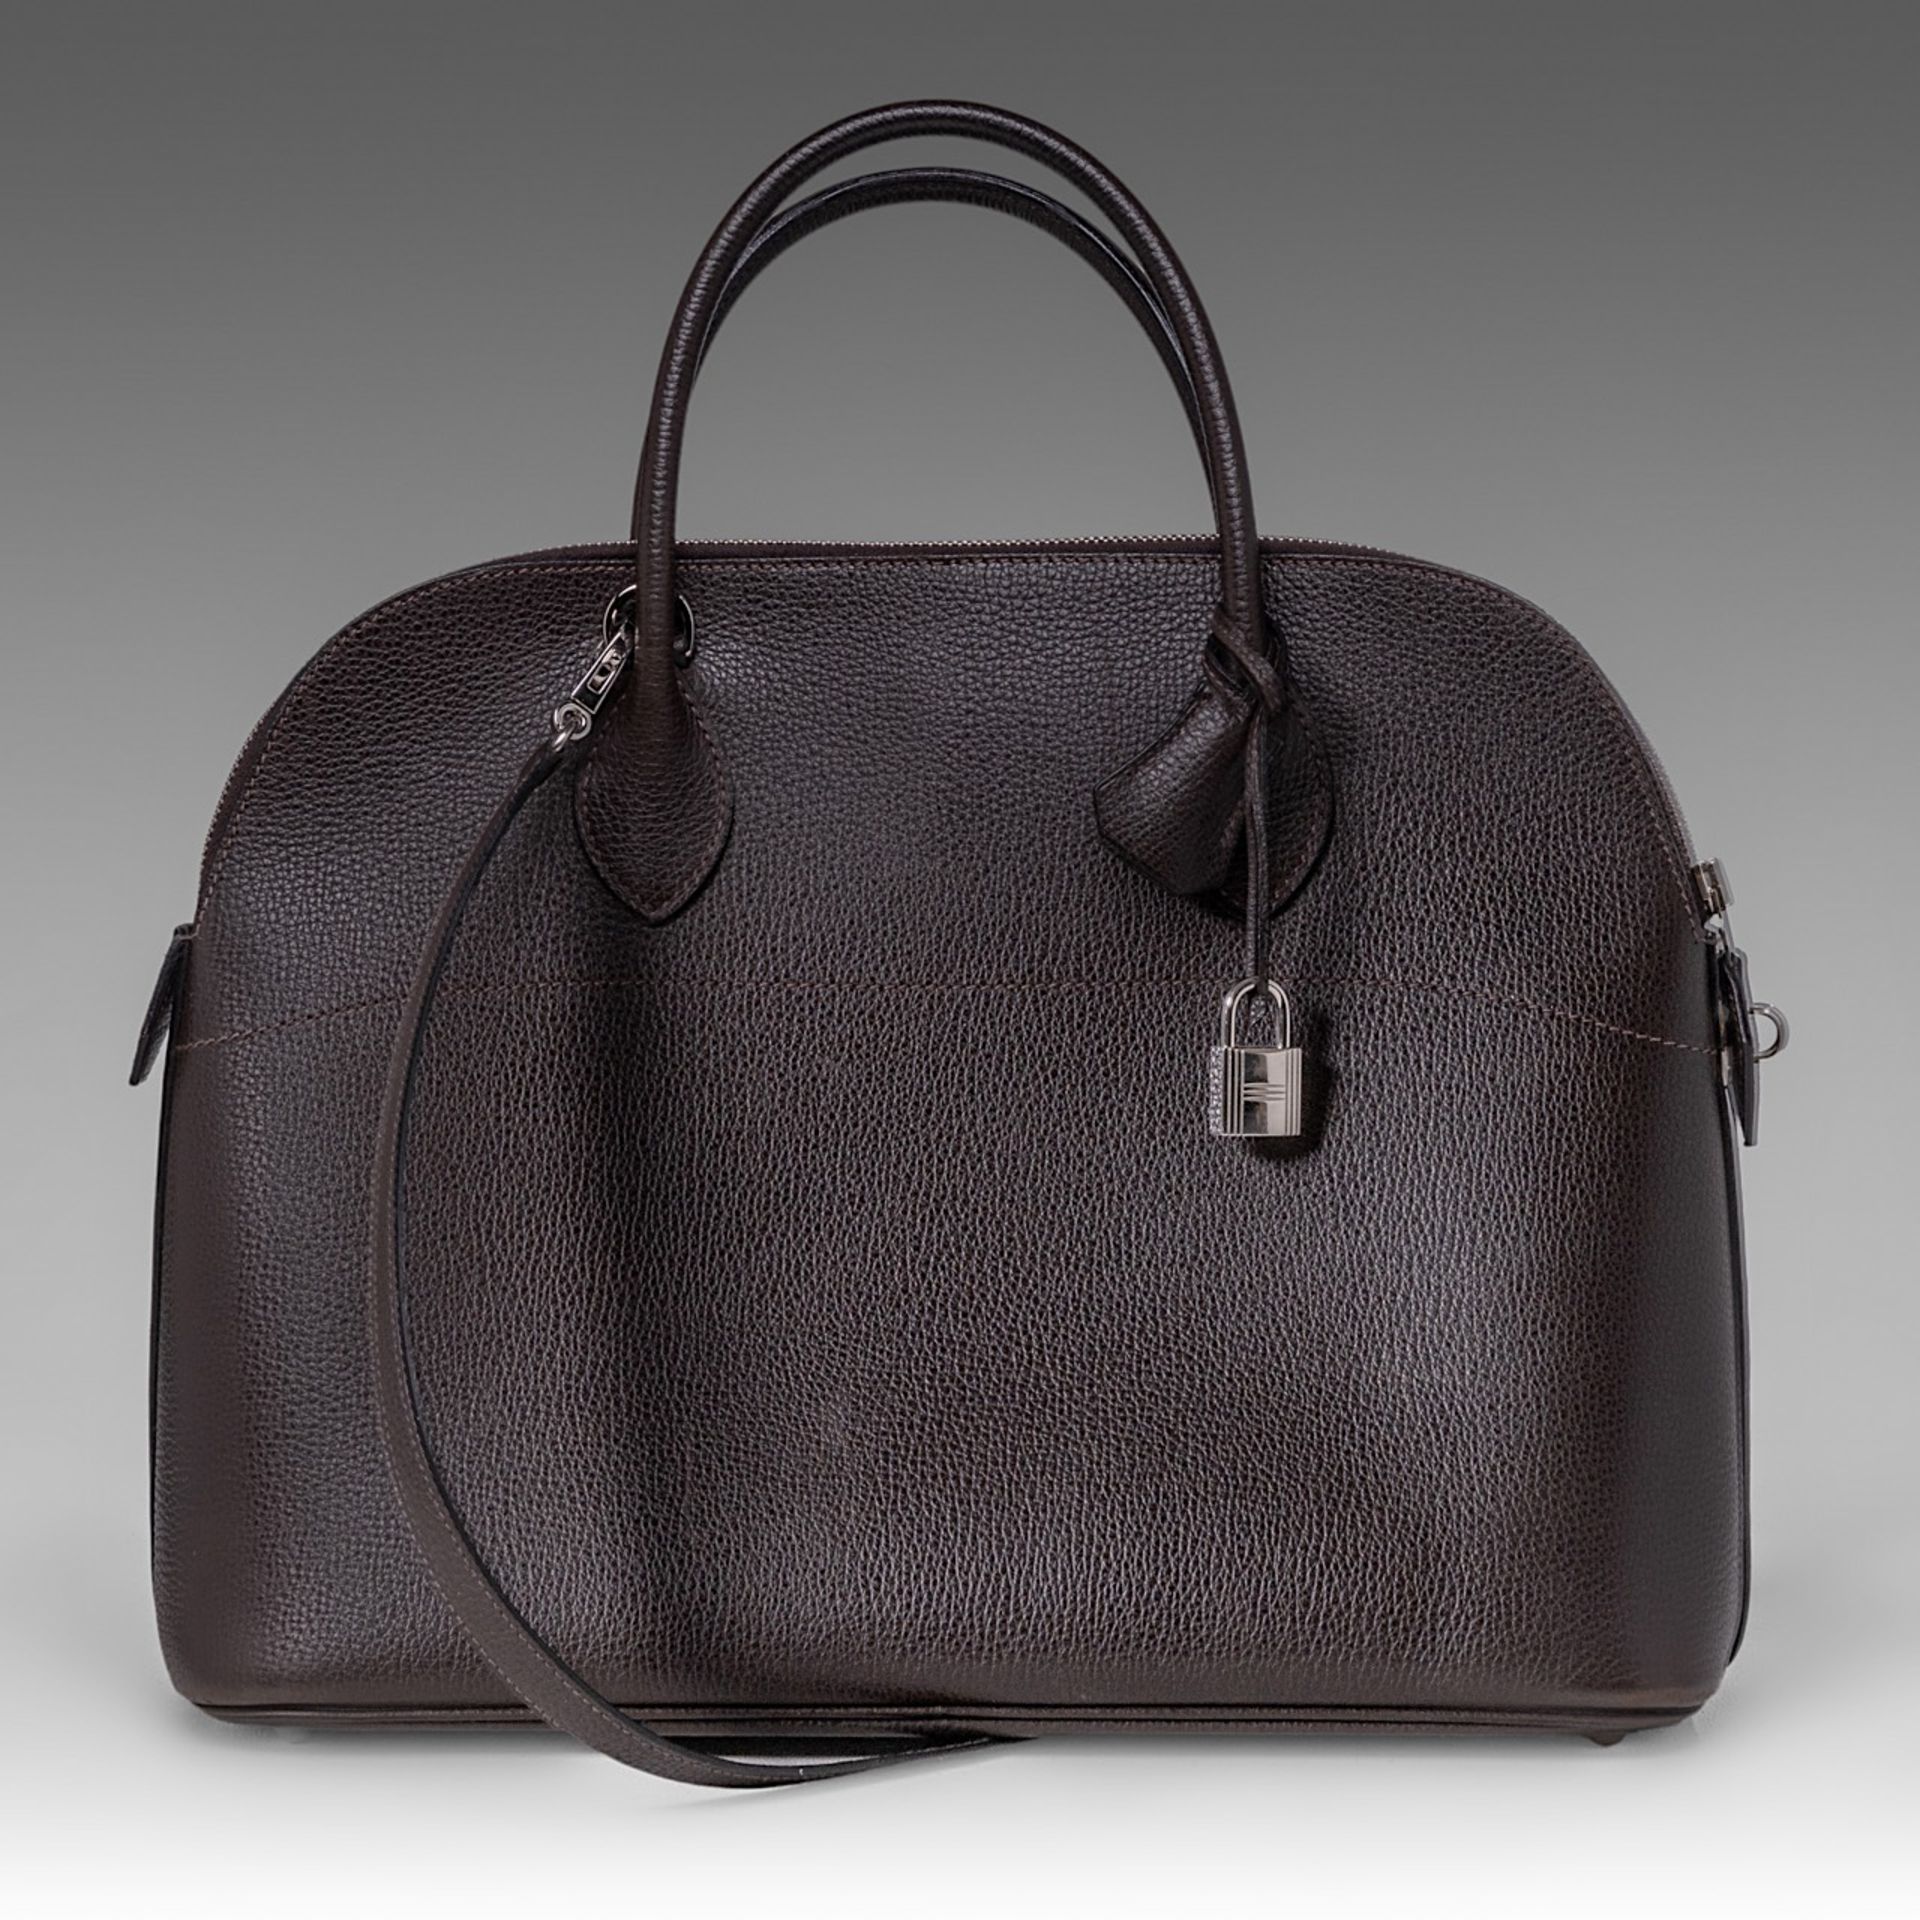 A Hermes bolide 34 CK brown veau epsom handbag, H 28 - W 37 - D 14 cm - Image 2 of 15